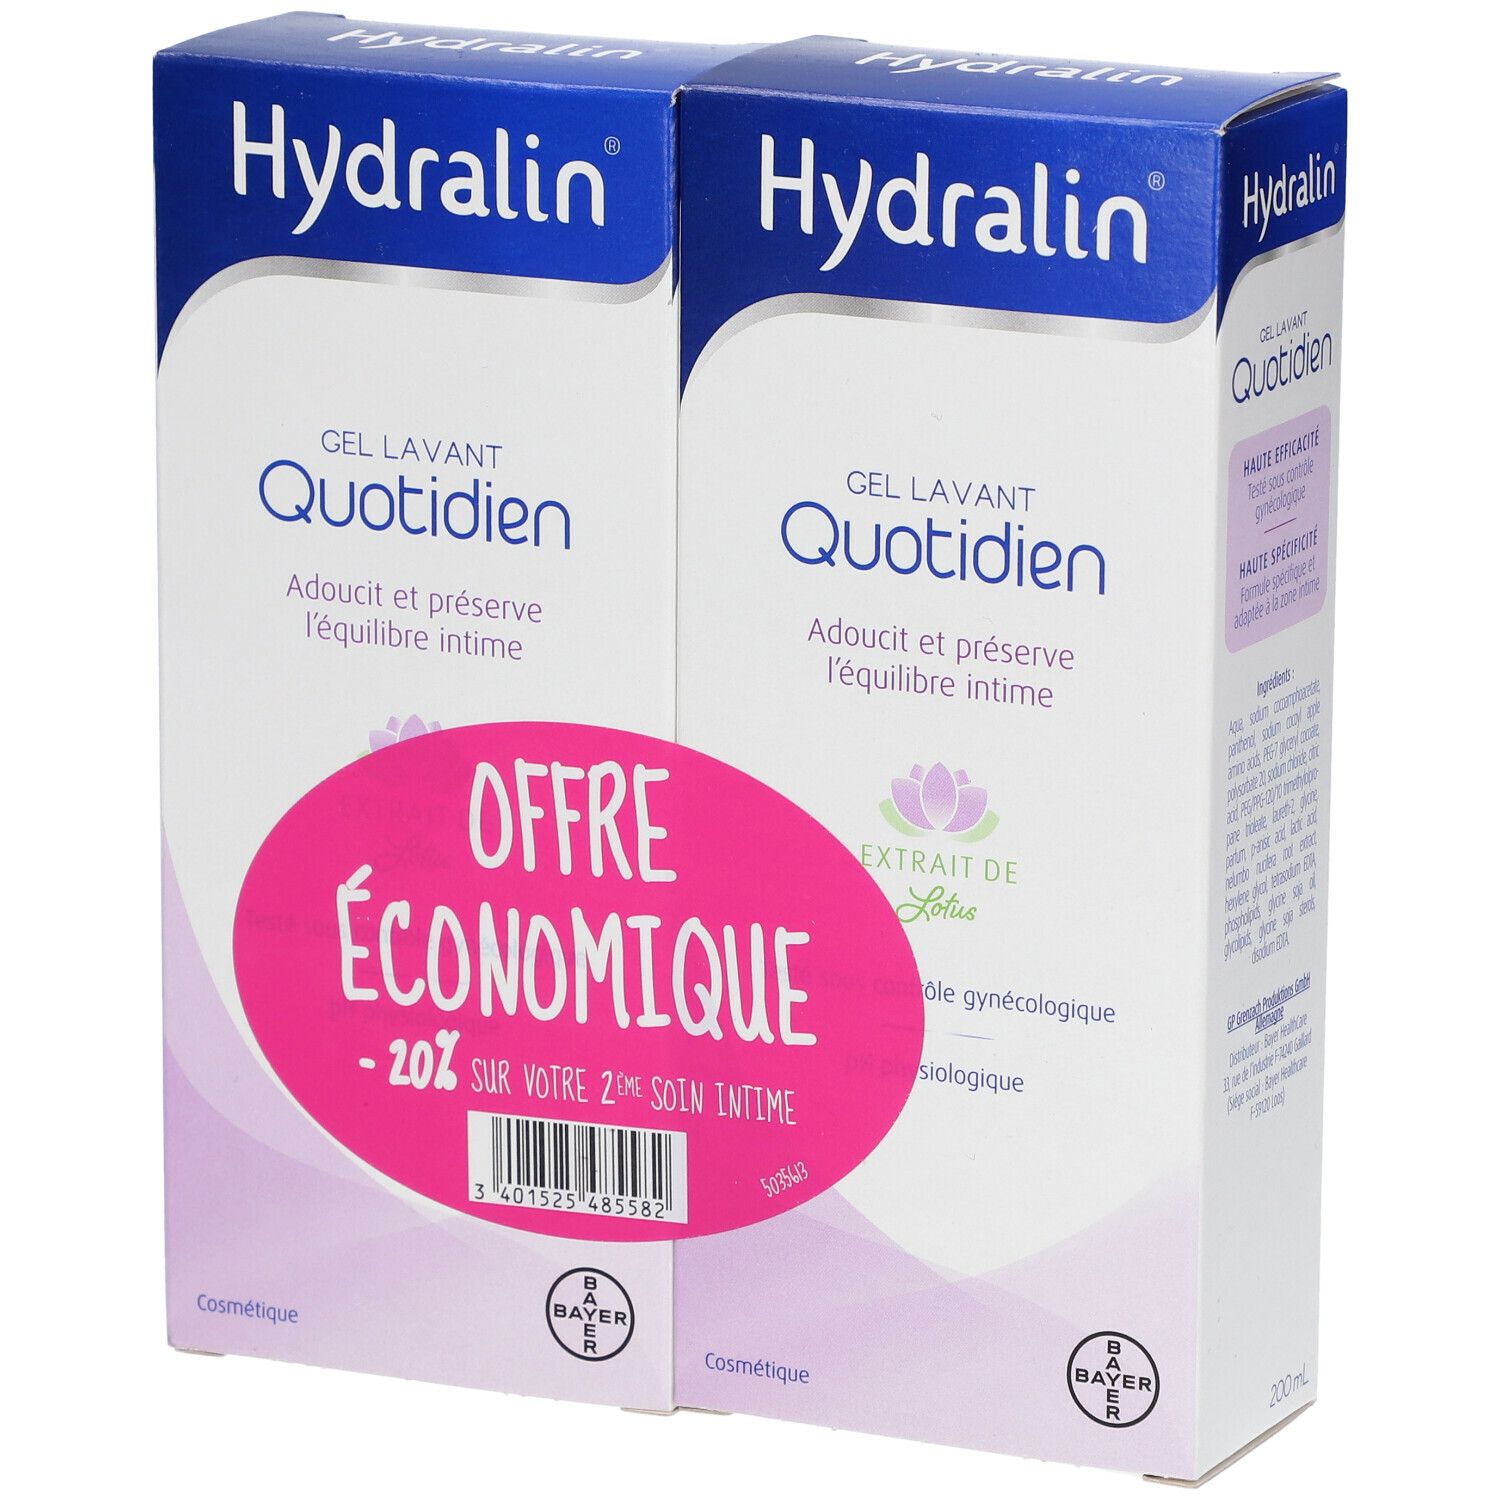 Hydralin Quotidien Gel Lavant Lot de 2 x 200 ml -20% Equilibre Intime